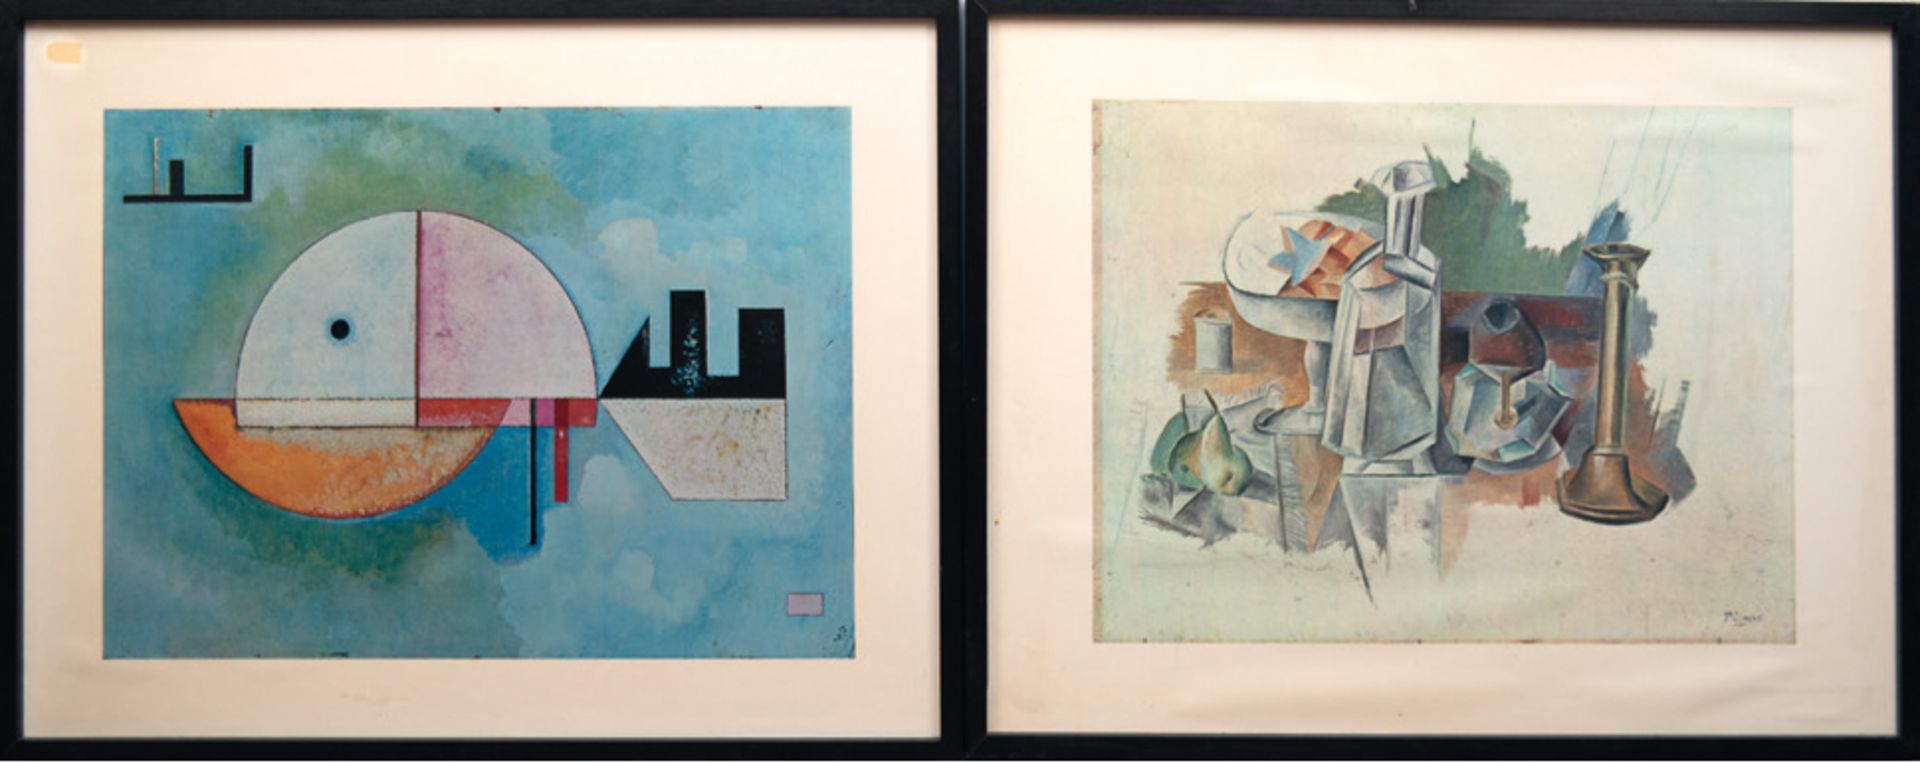 2 dekorative Drucke, Max Ernst und Pablo Picasso "Abstrakte figürliche Darstellungen", je 47x62 cm,